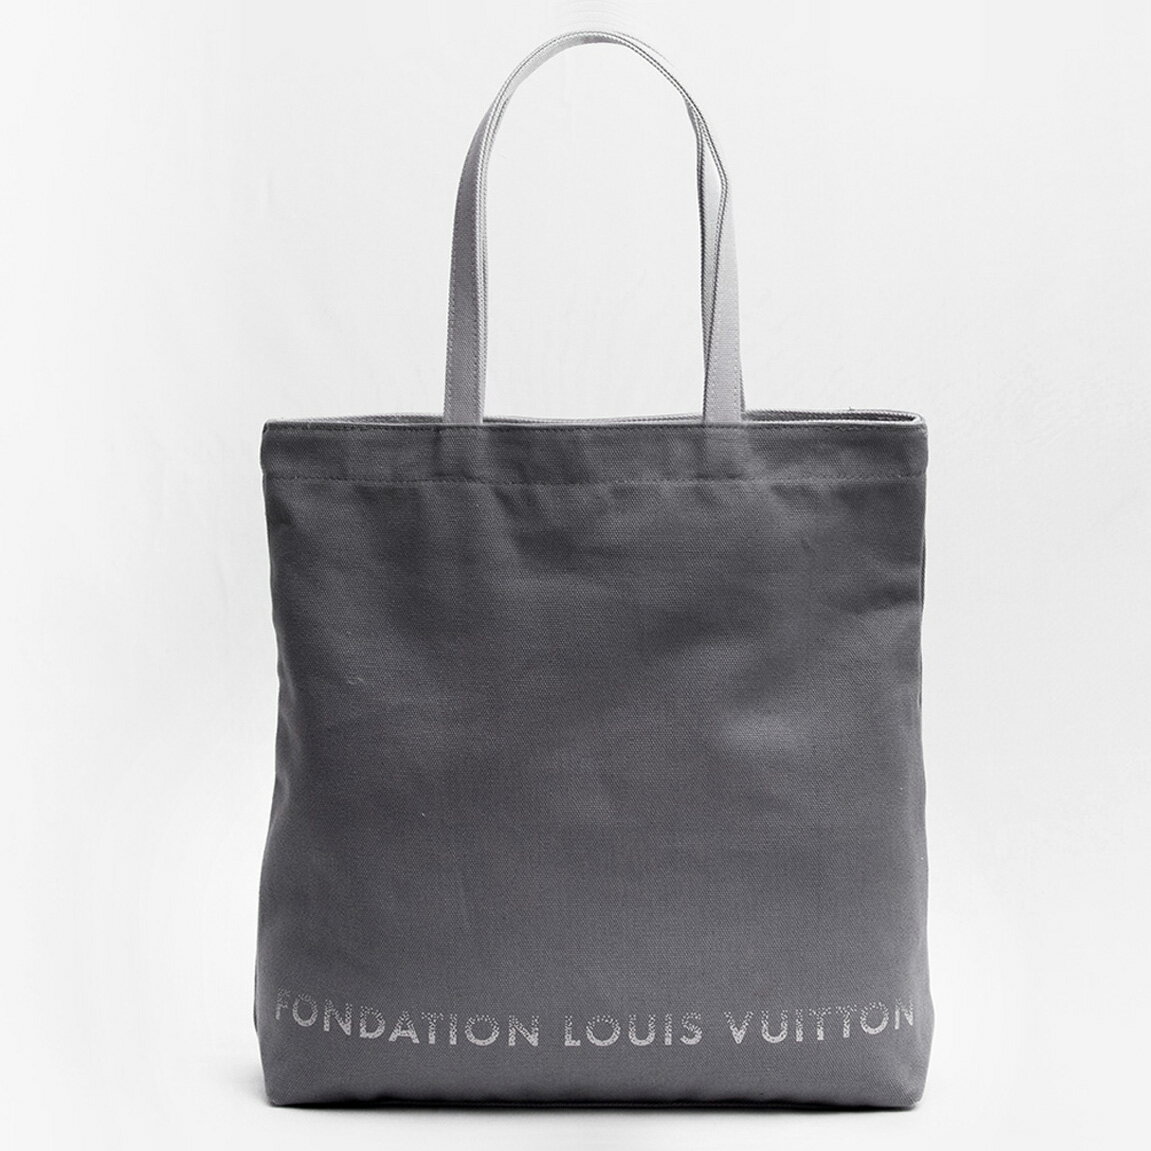 【楽天】フォンダシオン ルイ・ヴィトン FONDATION LOUIS VUITTON / FLV美術館 限定 トートバッグ #Grey Canvas Tote Bagの売れ筋人気ランキング商品